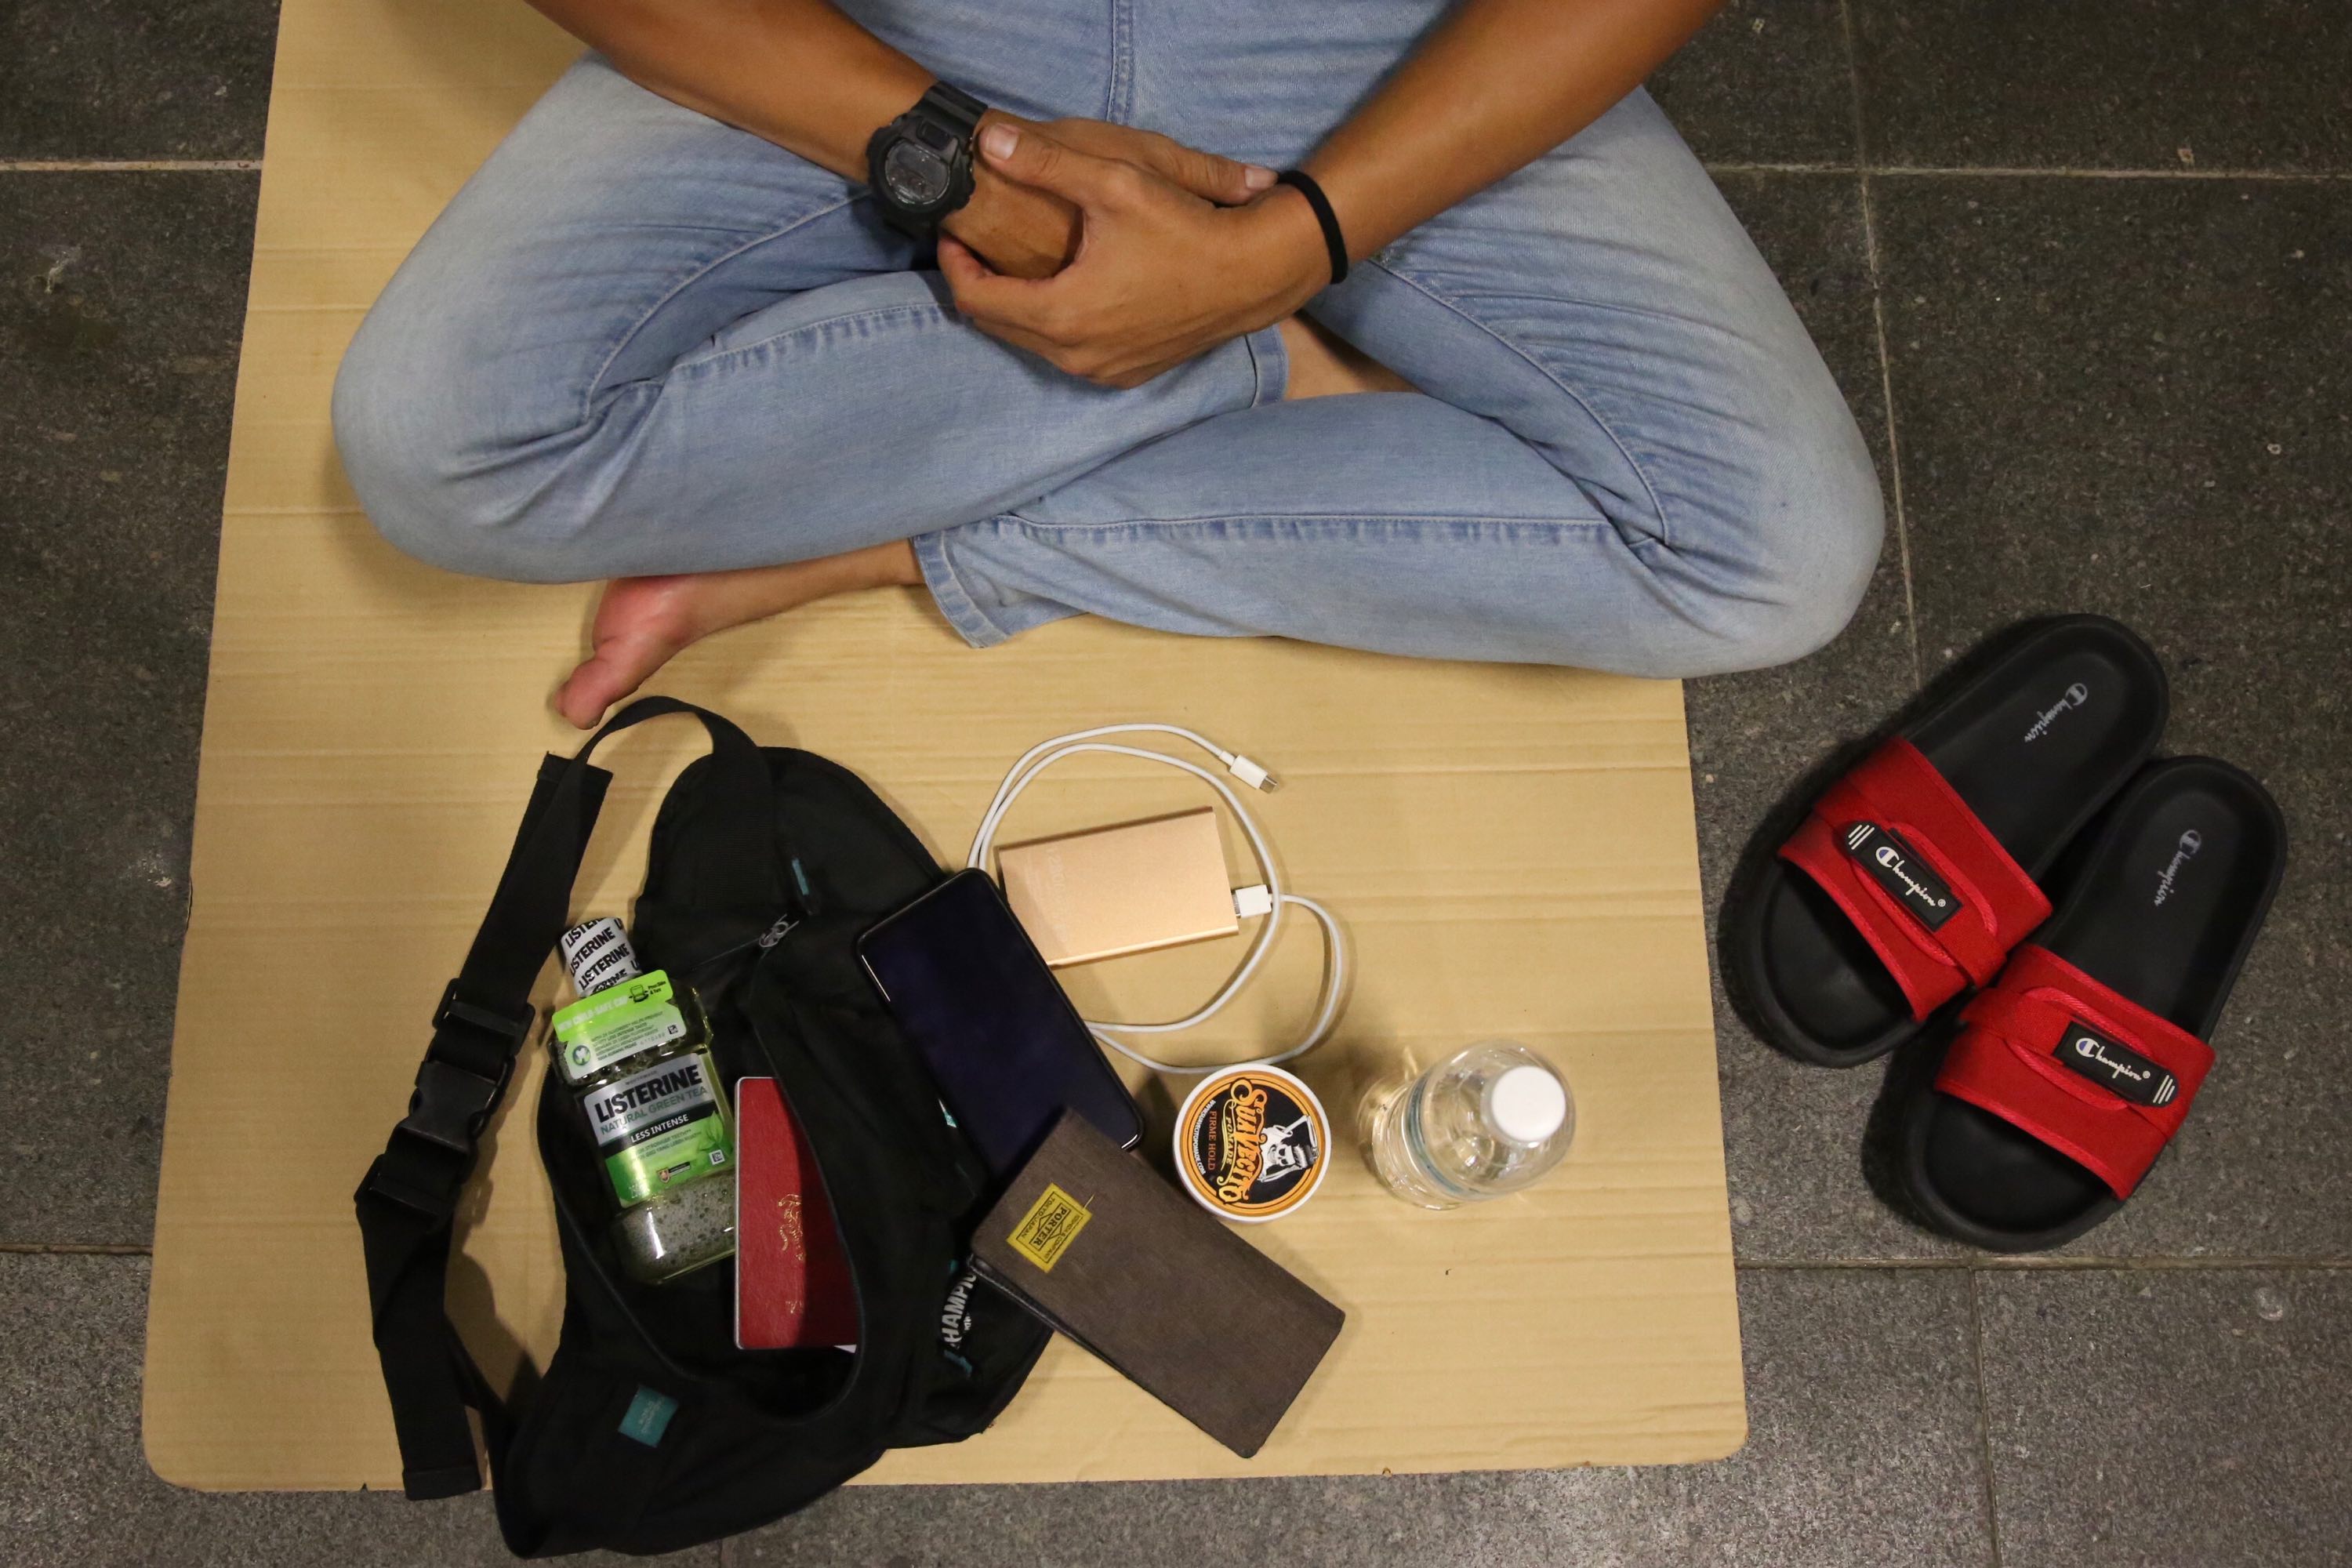 由于没时间收拾行李，阿米尔之带了充电宝及发蜡就匆忙的赶在行动限制令前，进到了新加坡。-图片摘自《TodayOnline》-